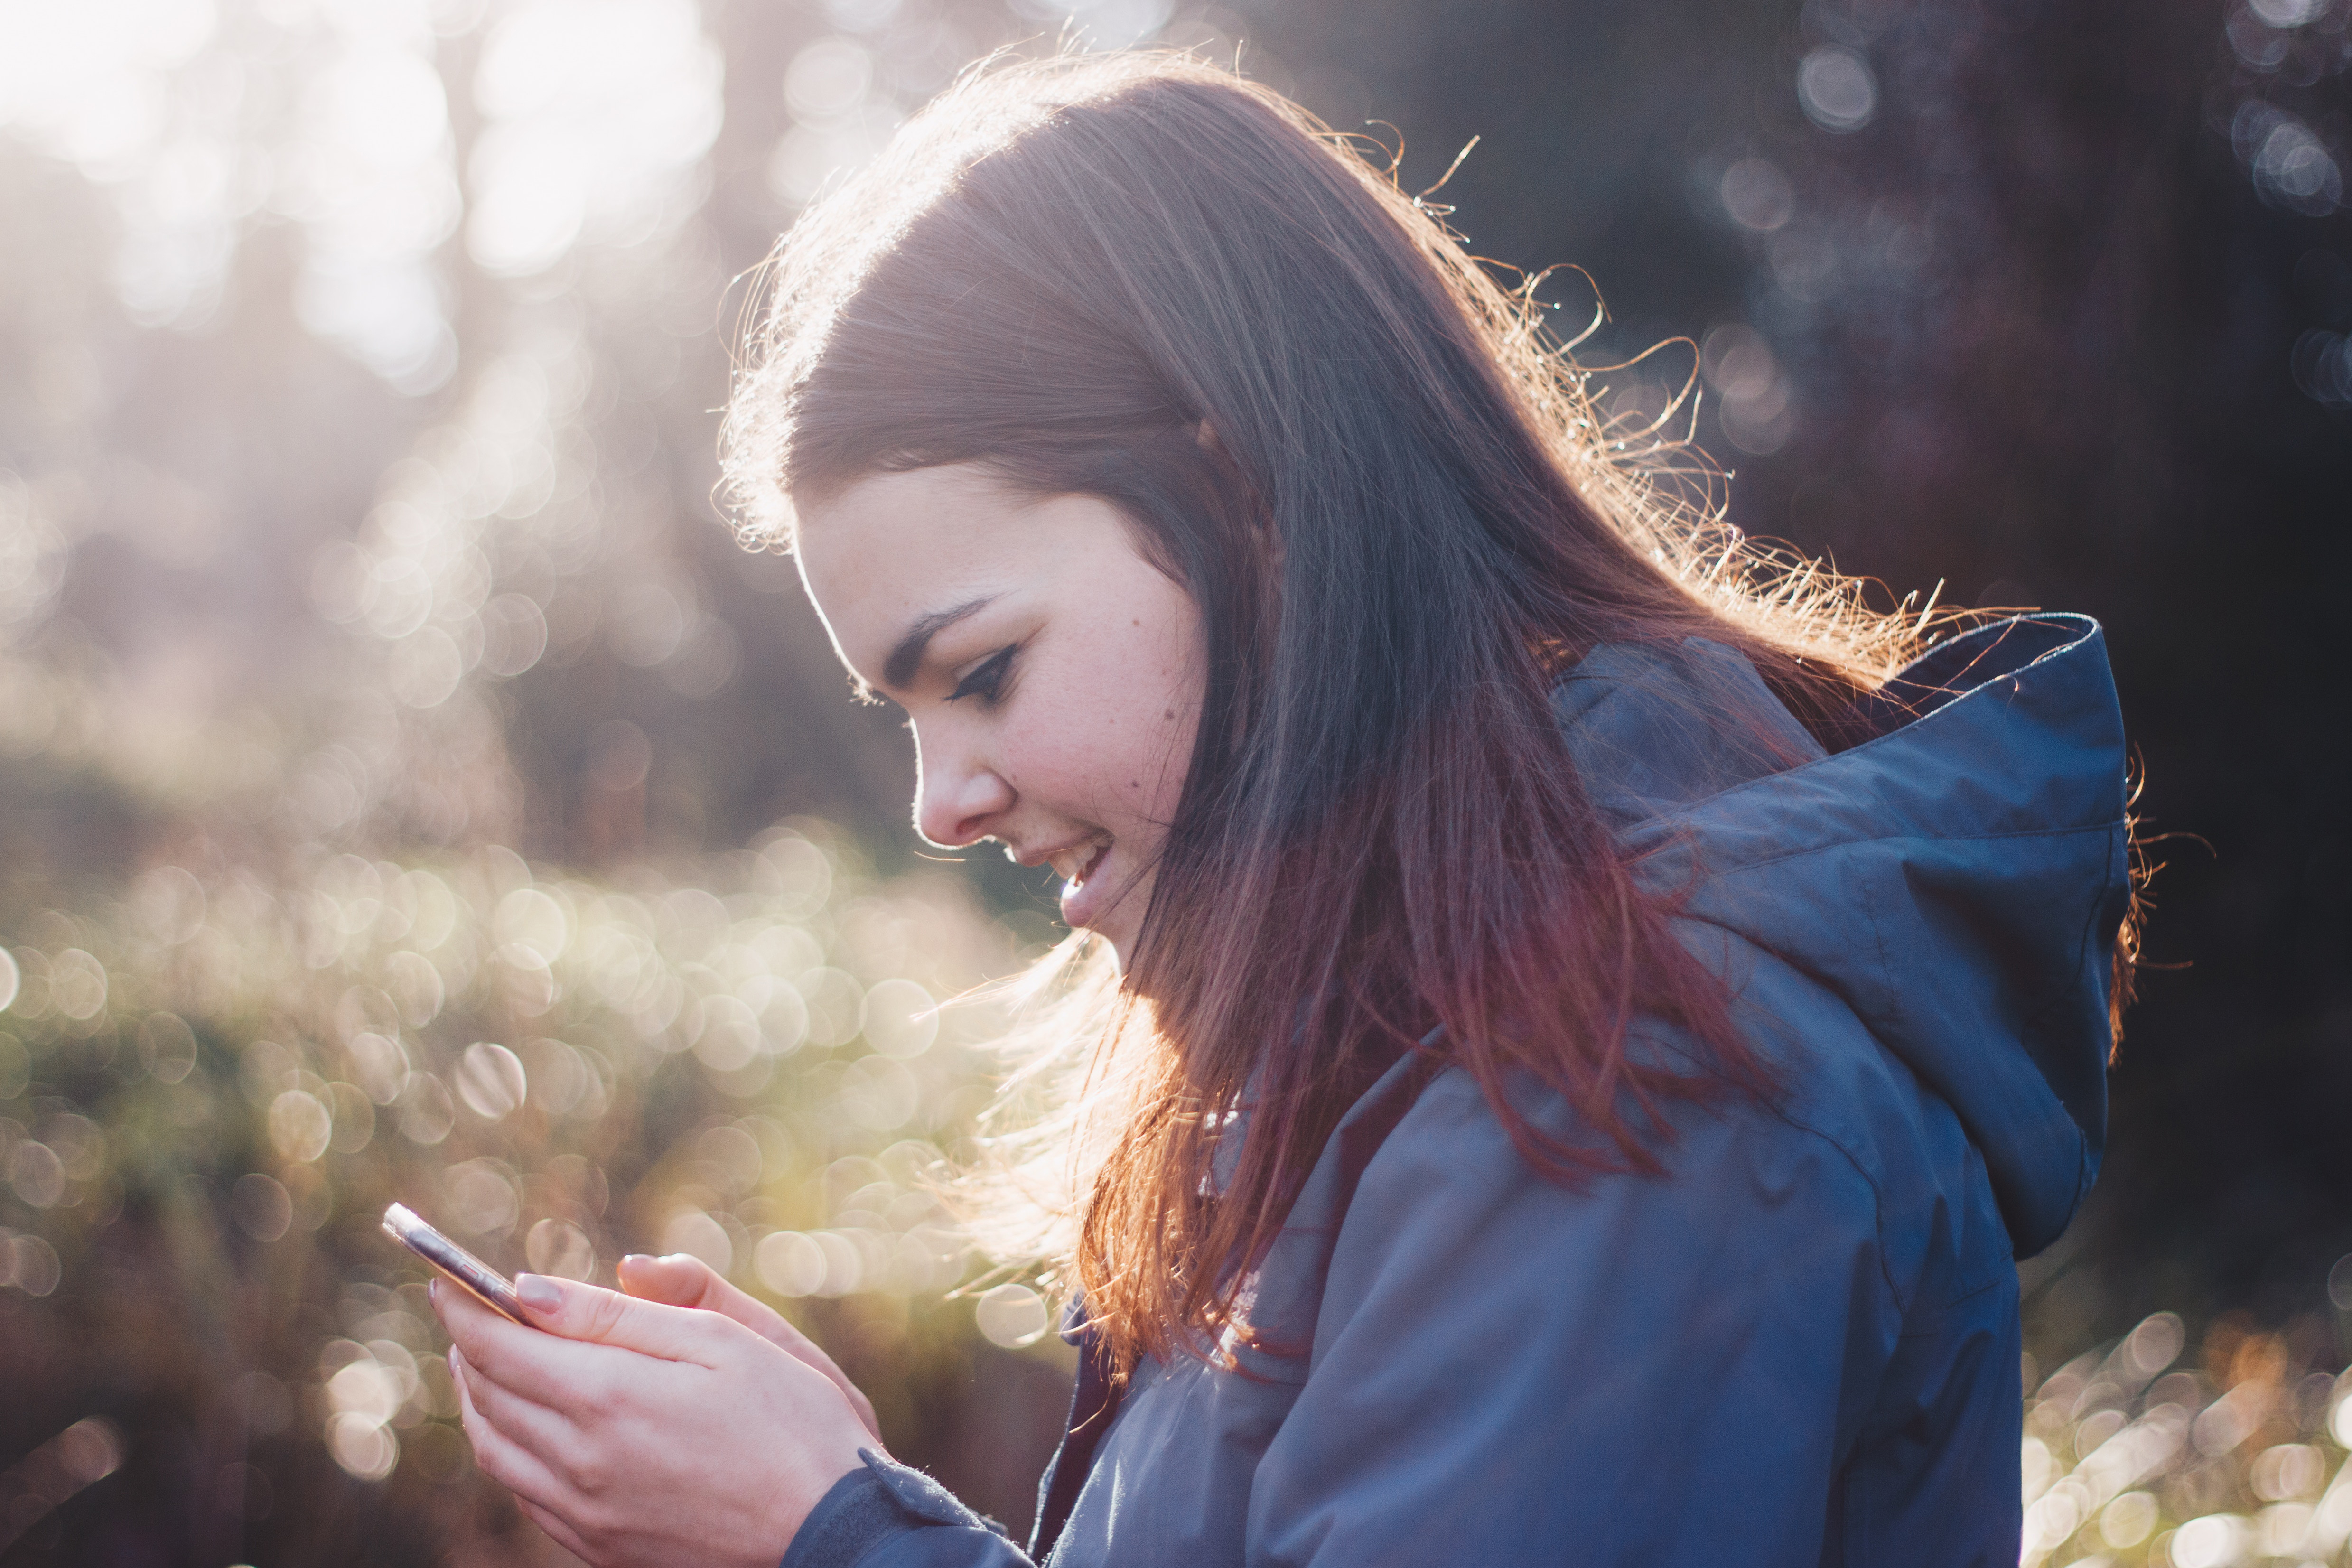 En ung jente holder en mobil i hånda og smiler mot skjermen. Foto